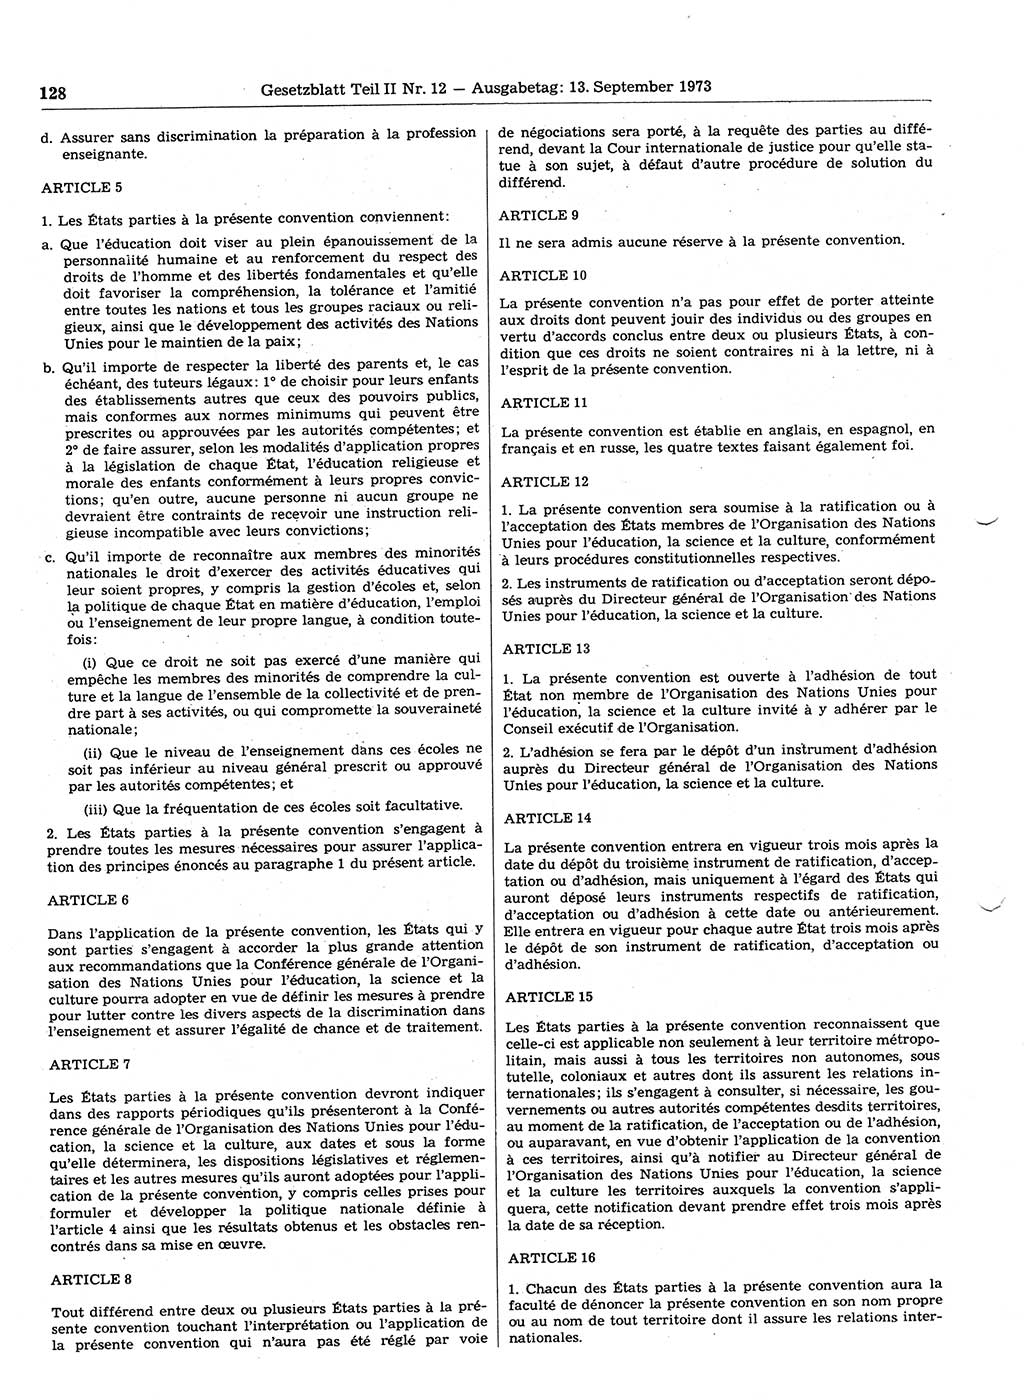 Gesetzblatt (GBl.) der Deutschen Demokratischen Republik (DDR) Teil ⅠⅠ 1973, Seite 128 (GBl. DDR ⅠⅠ 1973, S. 128)